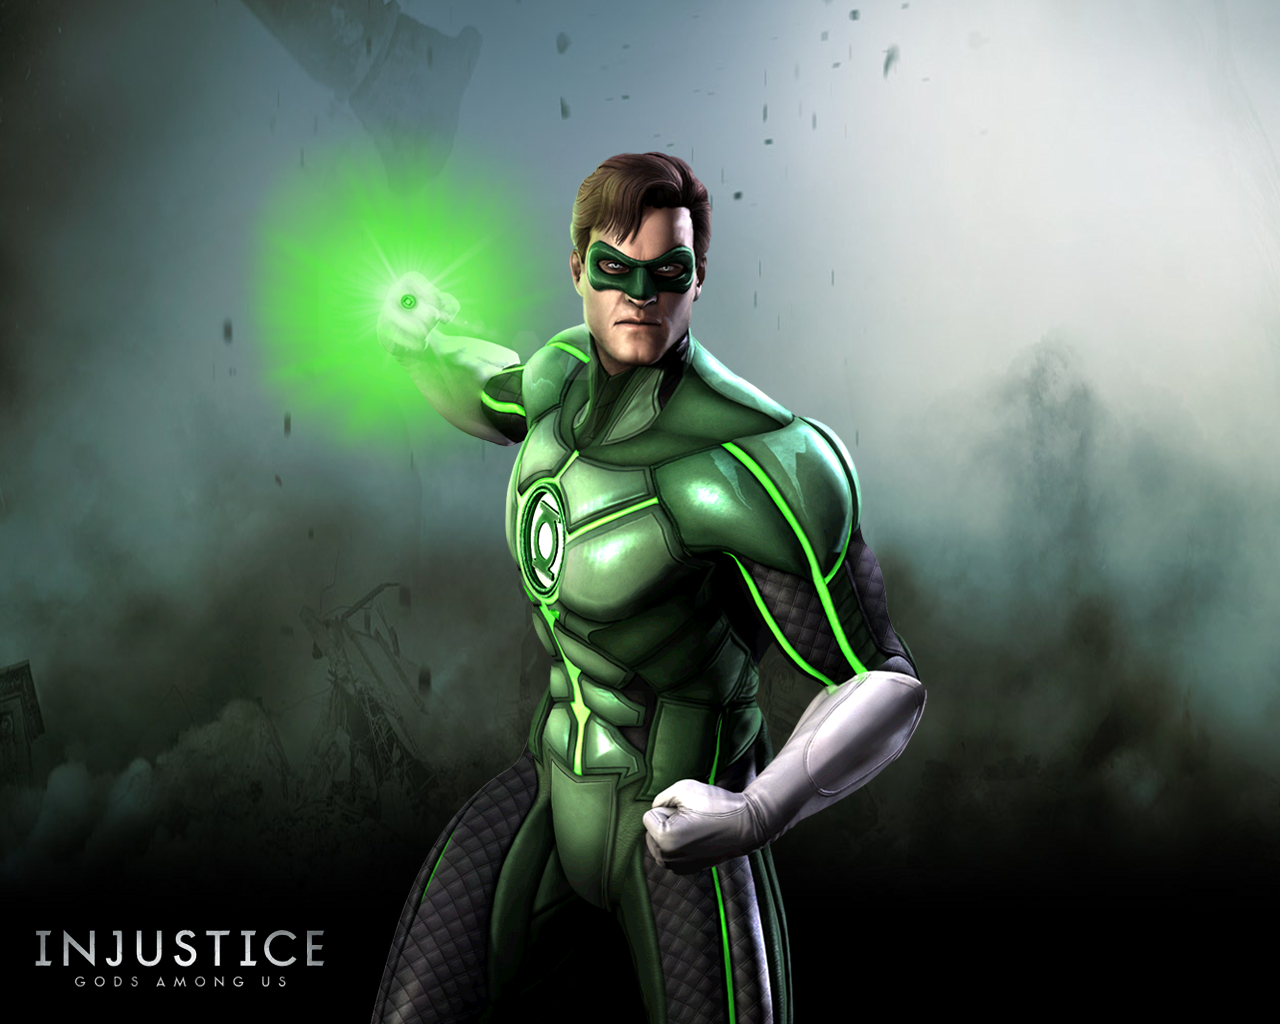 fond d'écran injustice,personnage fictif,la lanterne verte,super héros,ligue de justice,supervillain